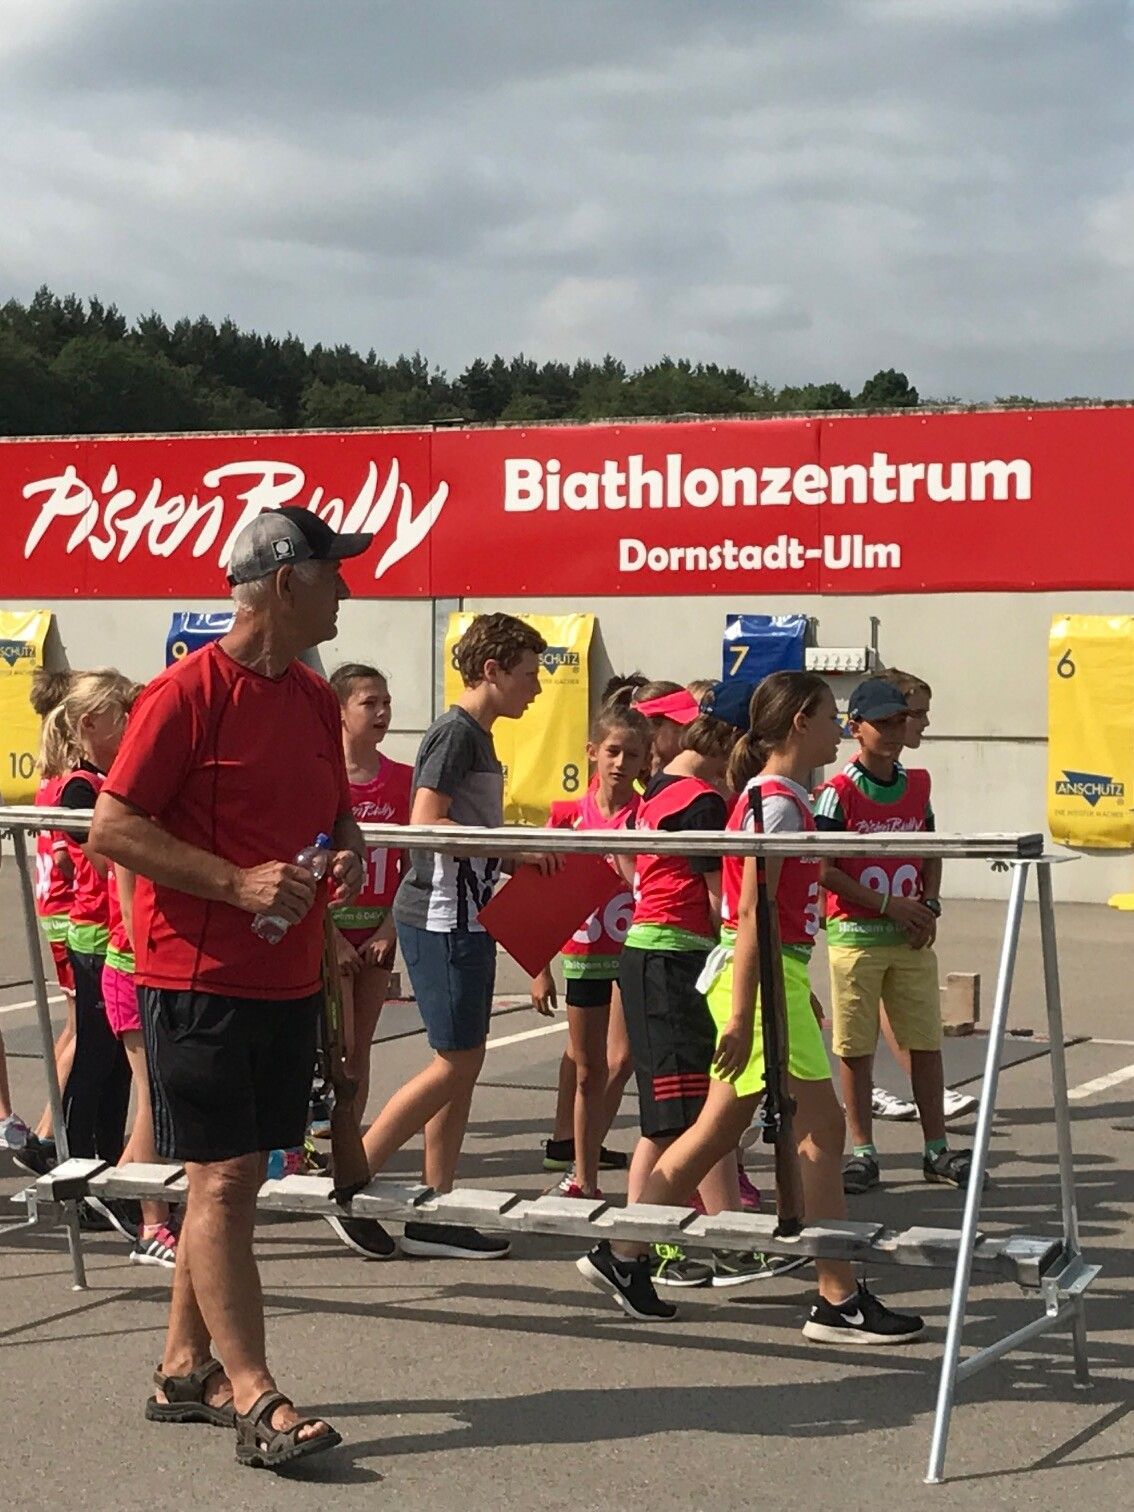 Sponsor di Centro Biathlon PistenBully